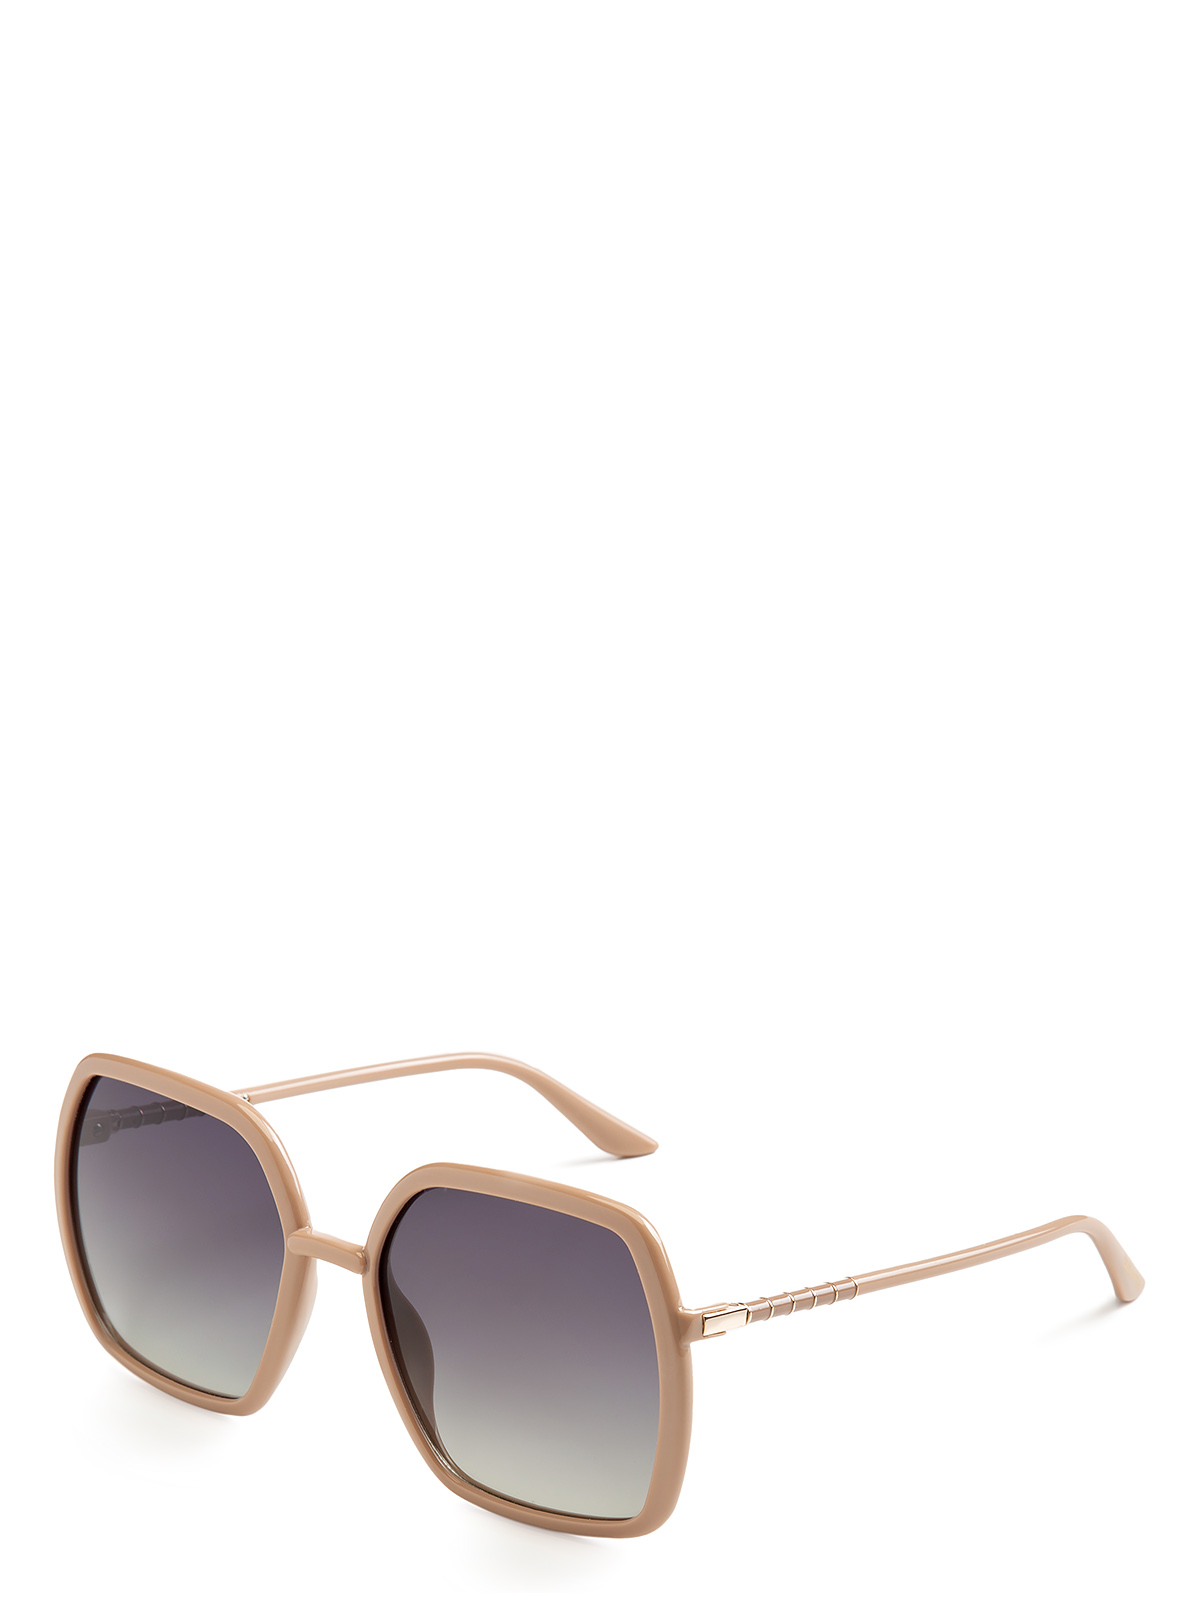 Солнцезащитные очки женские Eleganzza ZZ-23122 серые